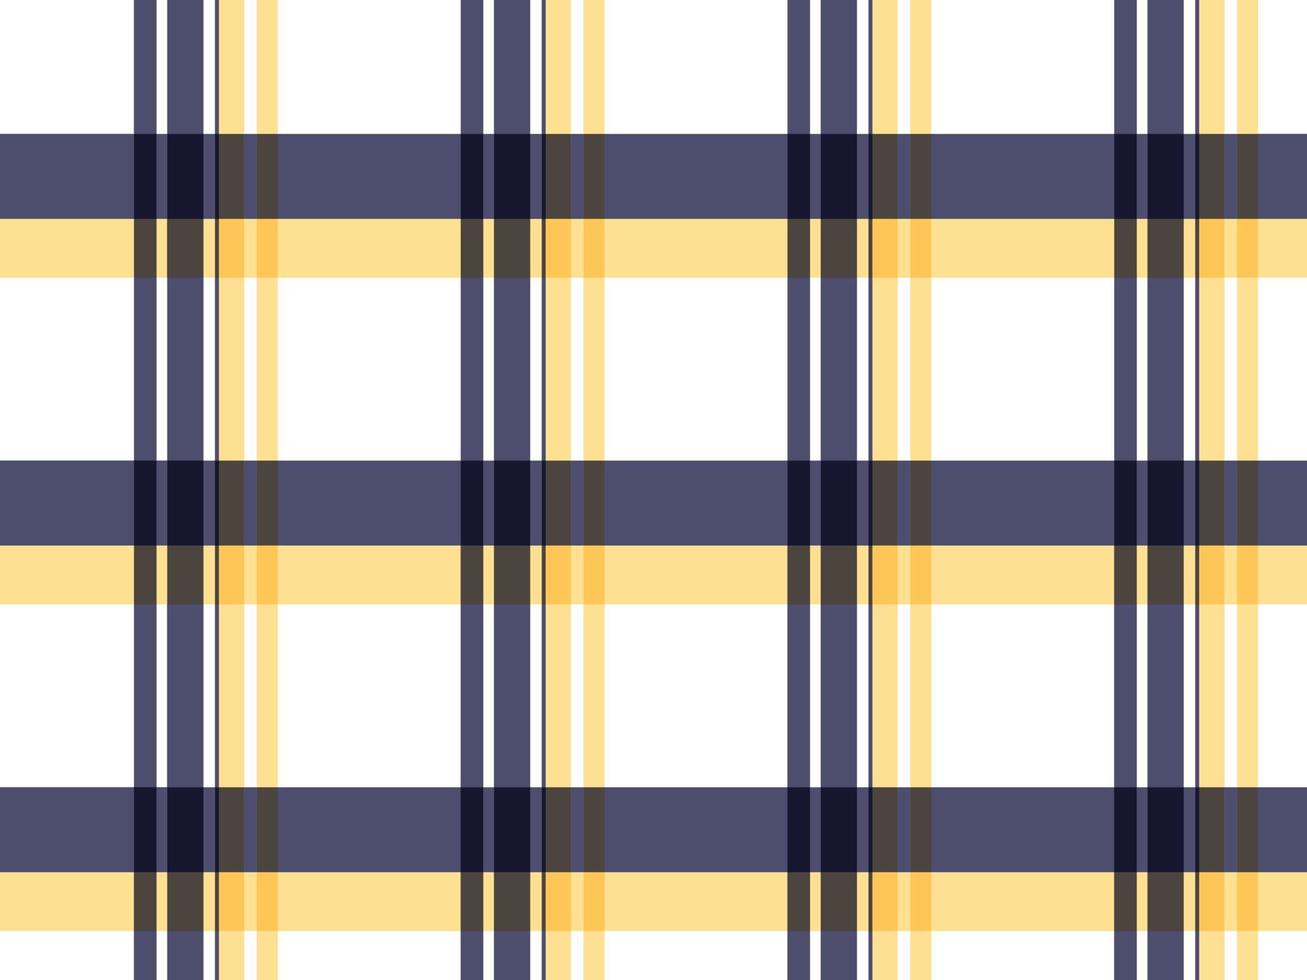 madras karierter stoff madras hintergrund pastellfarbe ein muster mit bunten streifen unterschiedlicher dicke, die sich kreuzen, um ungleichmäßige karos zu erzeugen. Wird normalerweise für Hemden verwendet. vektor